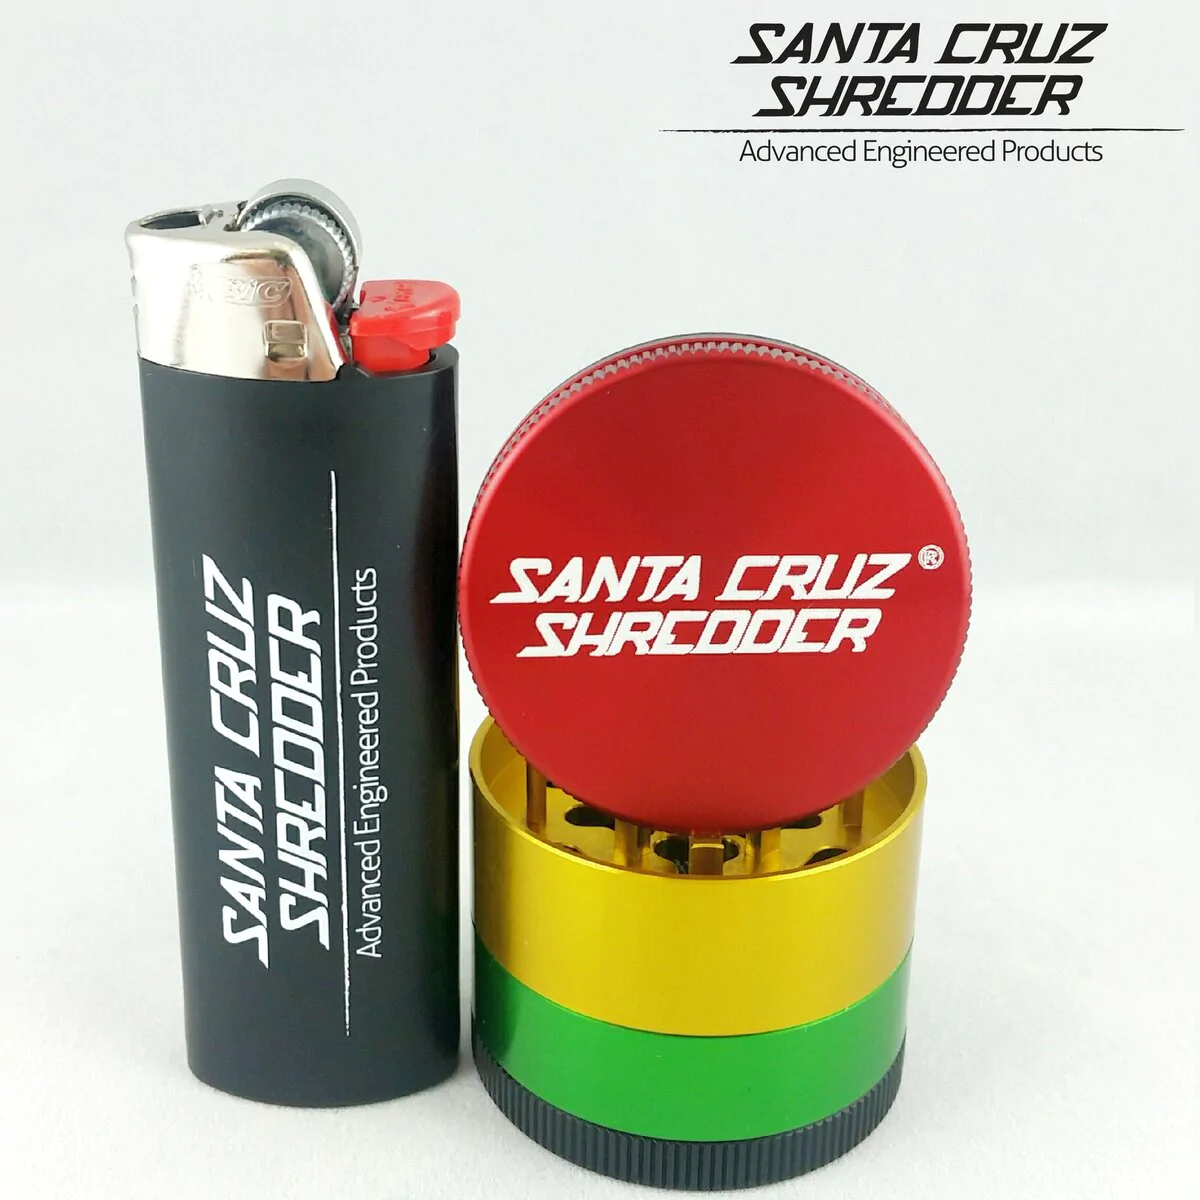 Santa Cruz Shredder 4-Piece Small Grinder